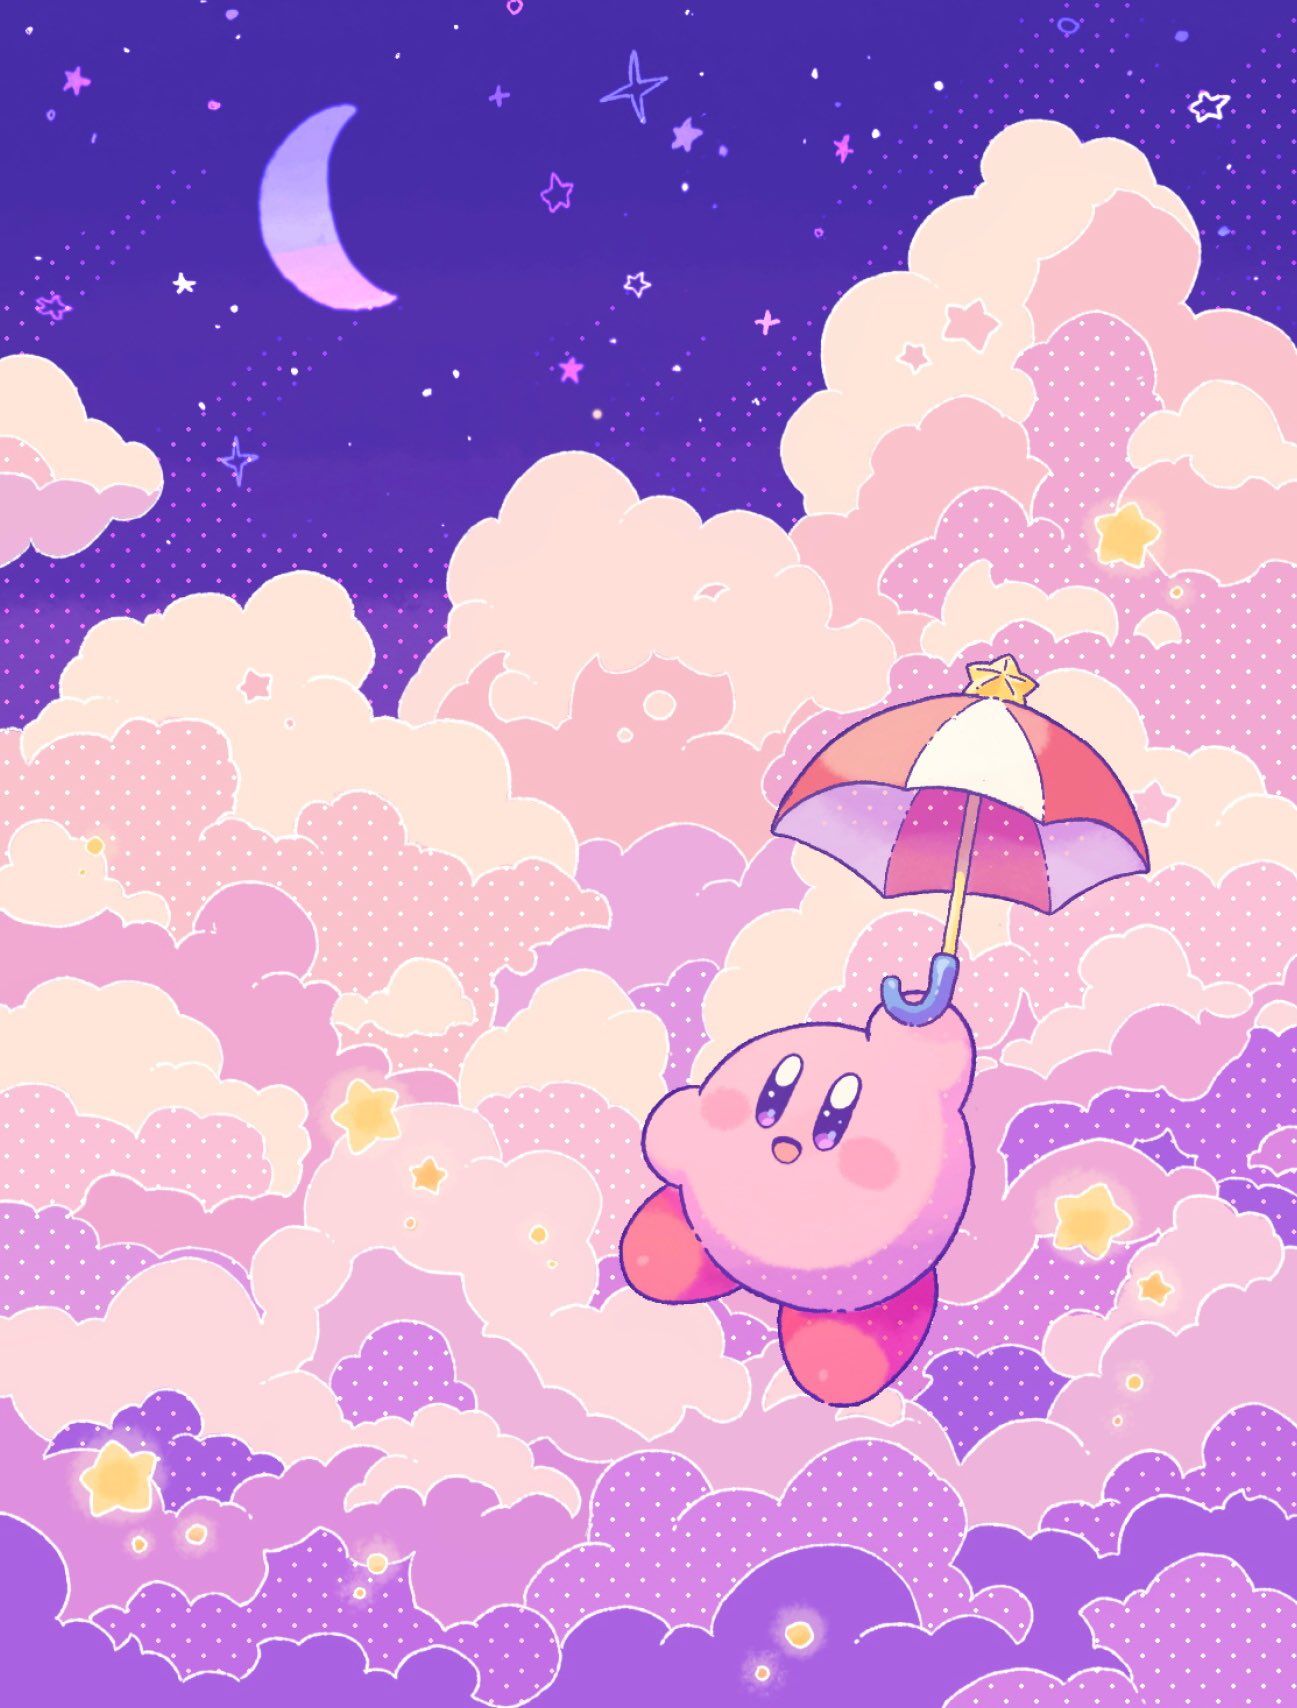 Cùng tải miễn phí hàng ngàn hình nền Kirby với đủ loại phông chữ, màu sắc và hình ảnh độc đáo để trang trí cho điện thoại hoặc máy tính của bạn. Sở hữu ngay những tác phẩm nghệ thuật đầy màu sắc và sinh động mà không phải bỏ ra một đồng xu nào!